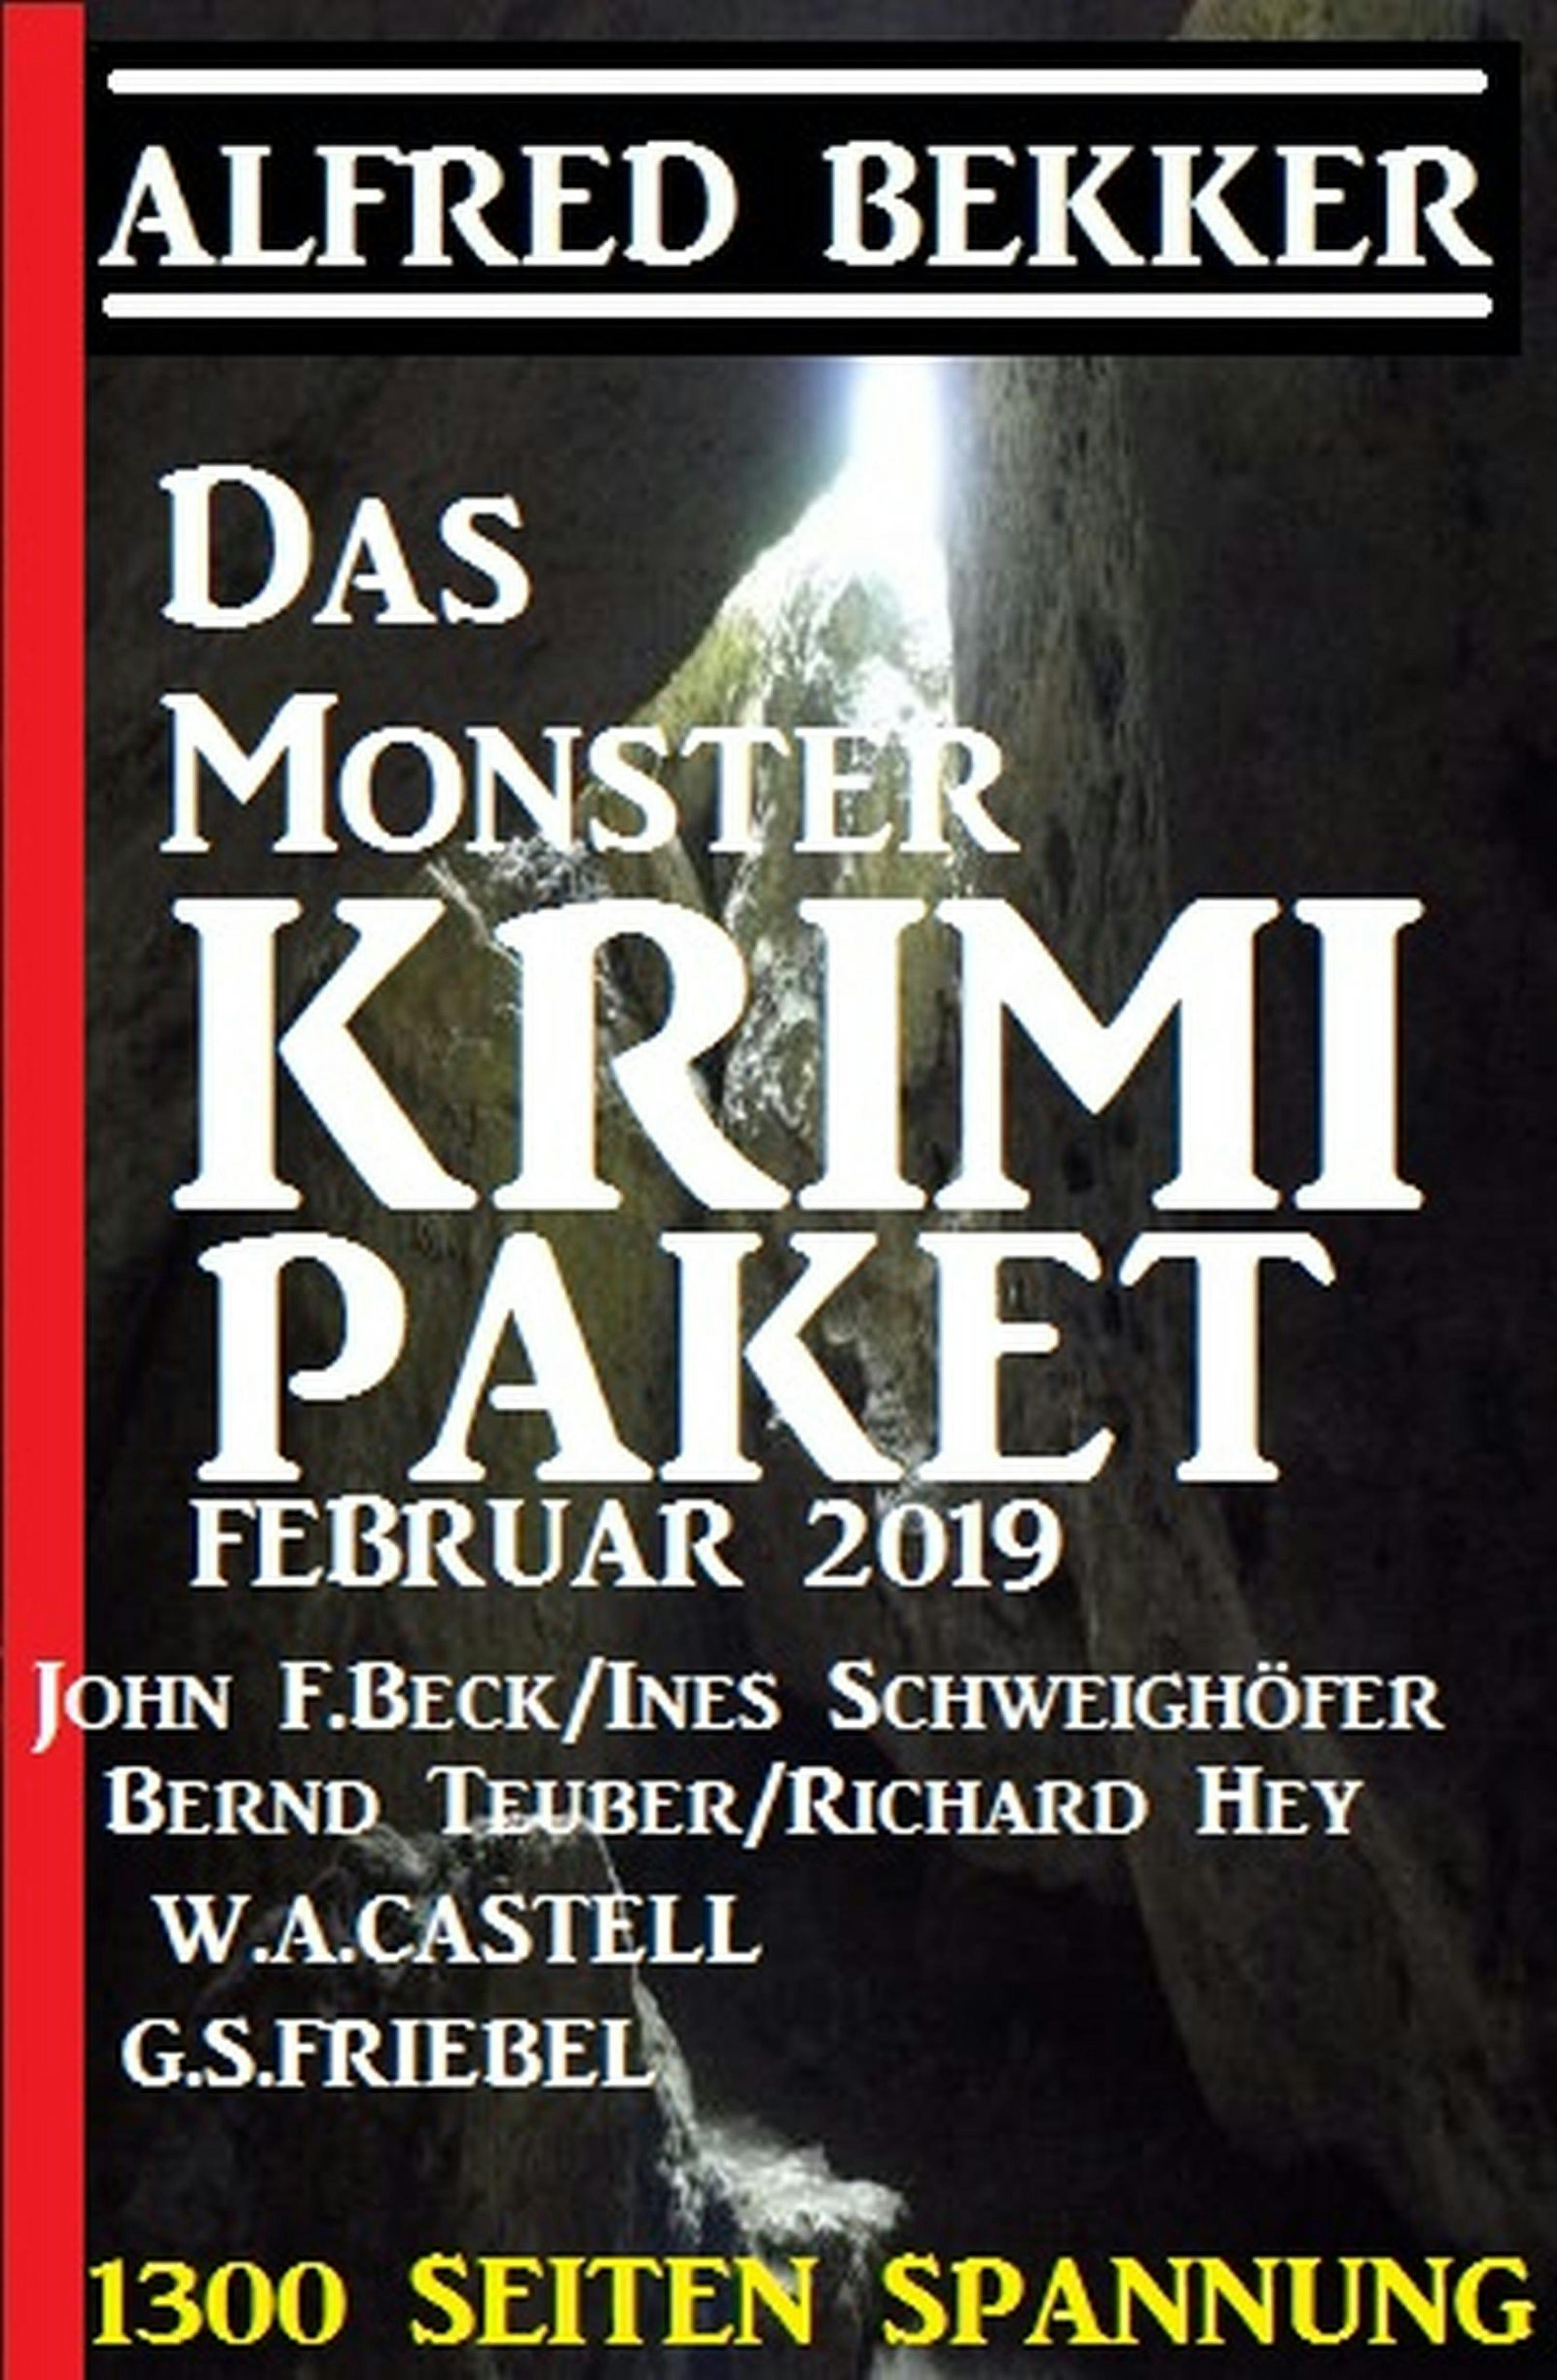 Das Monster Krimi Paket Februar 2019 - 1300 Seiten Spannung - Alfred Bekker, John F. Beck, Richard Hey, G. S. Friebel, Bernd Teuber, Ines Schweighöfer, W. A. Castell